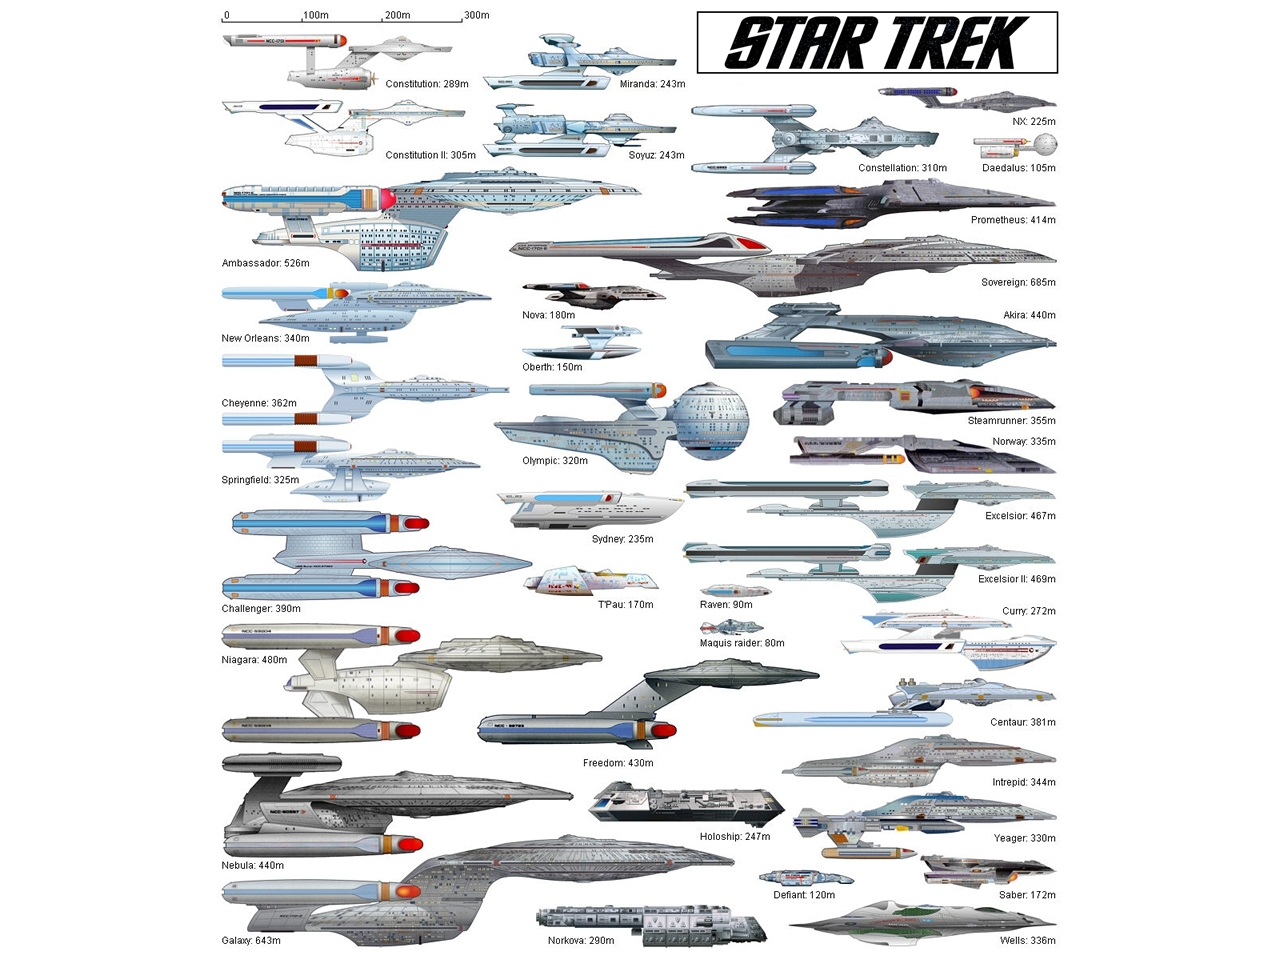 "Star Trek" desktop wallpaper number 8 - Starfleet's Ships of the Line #2 (1280 x 960 pixels)